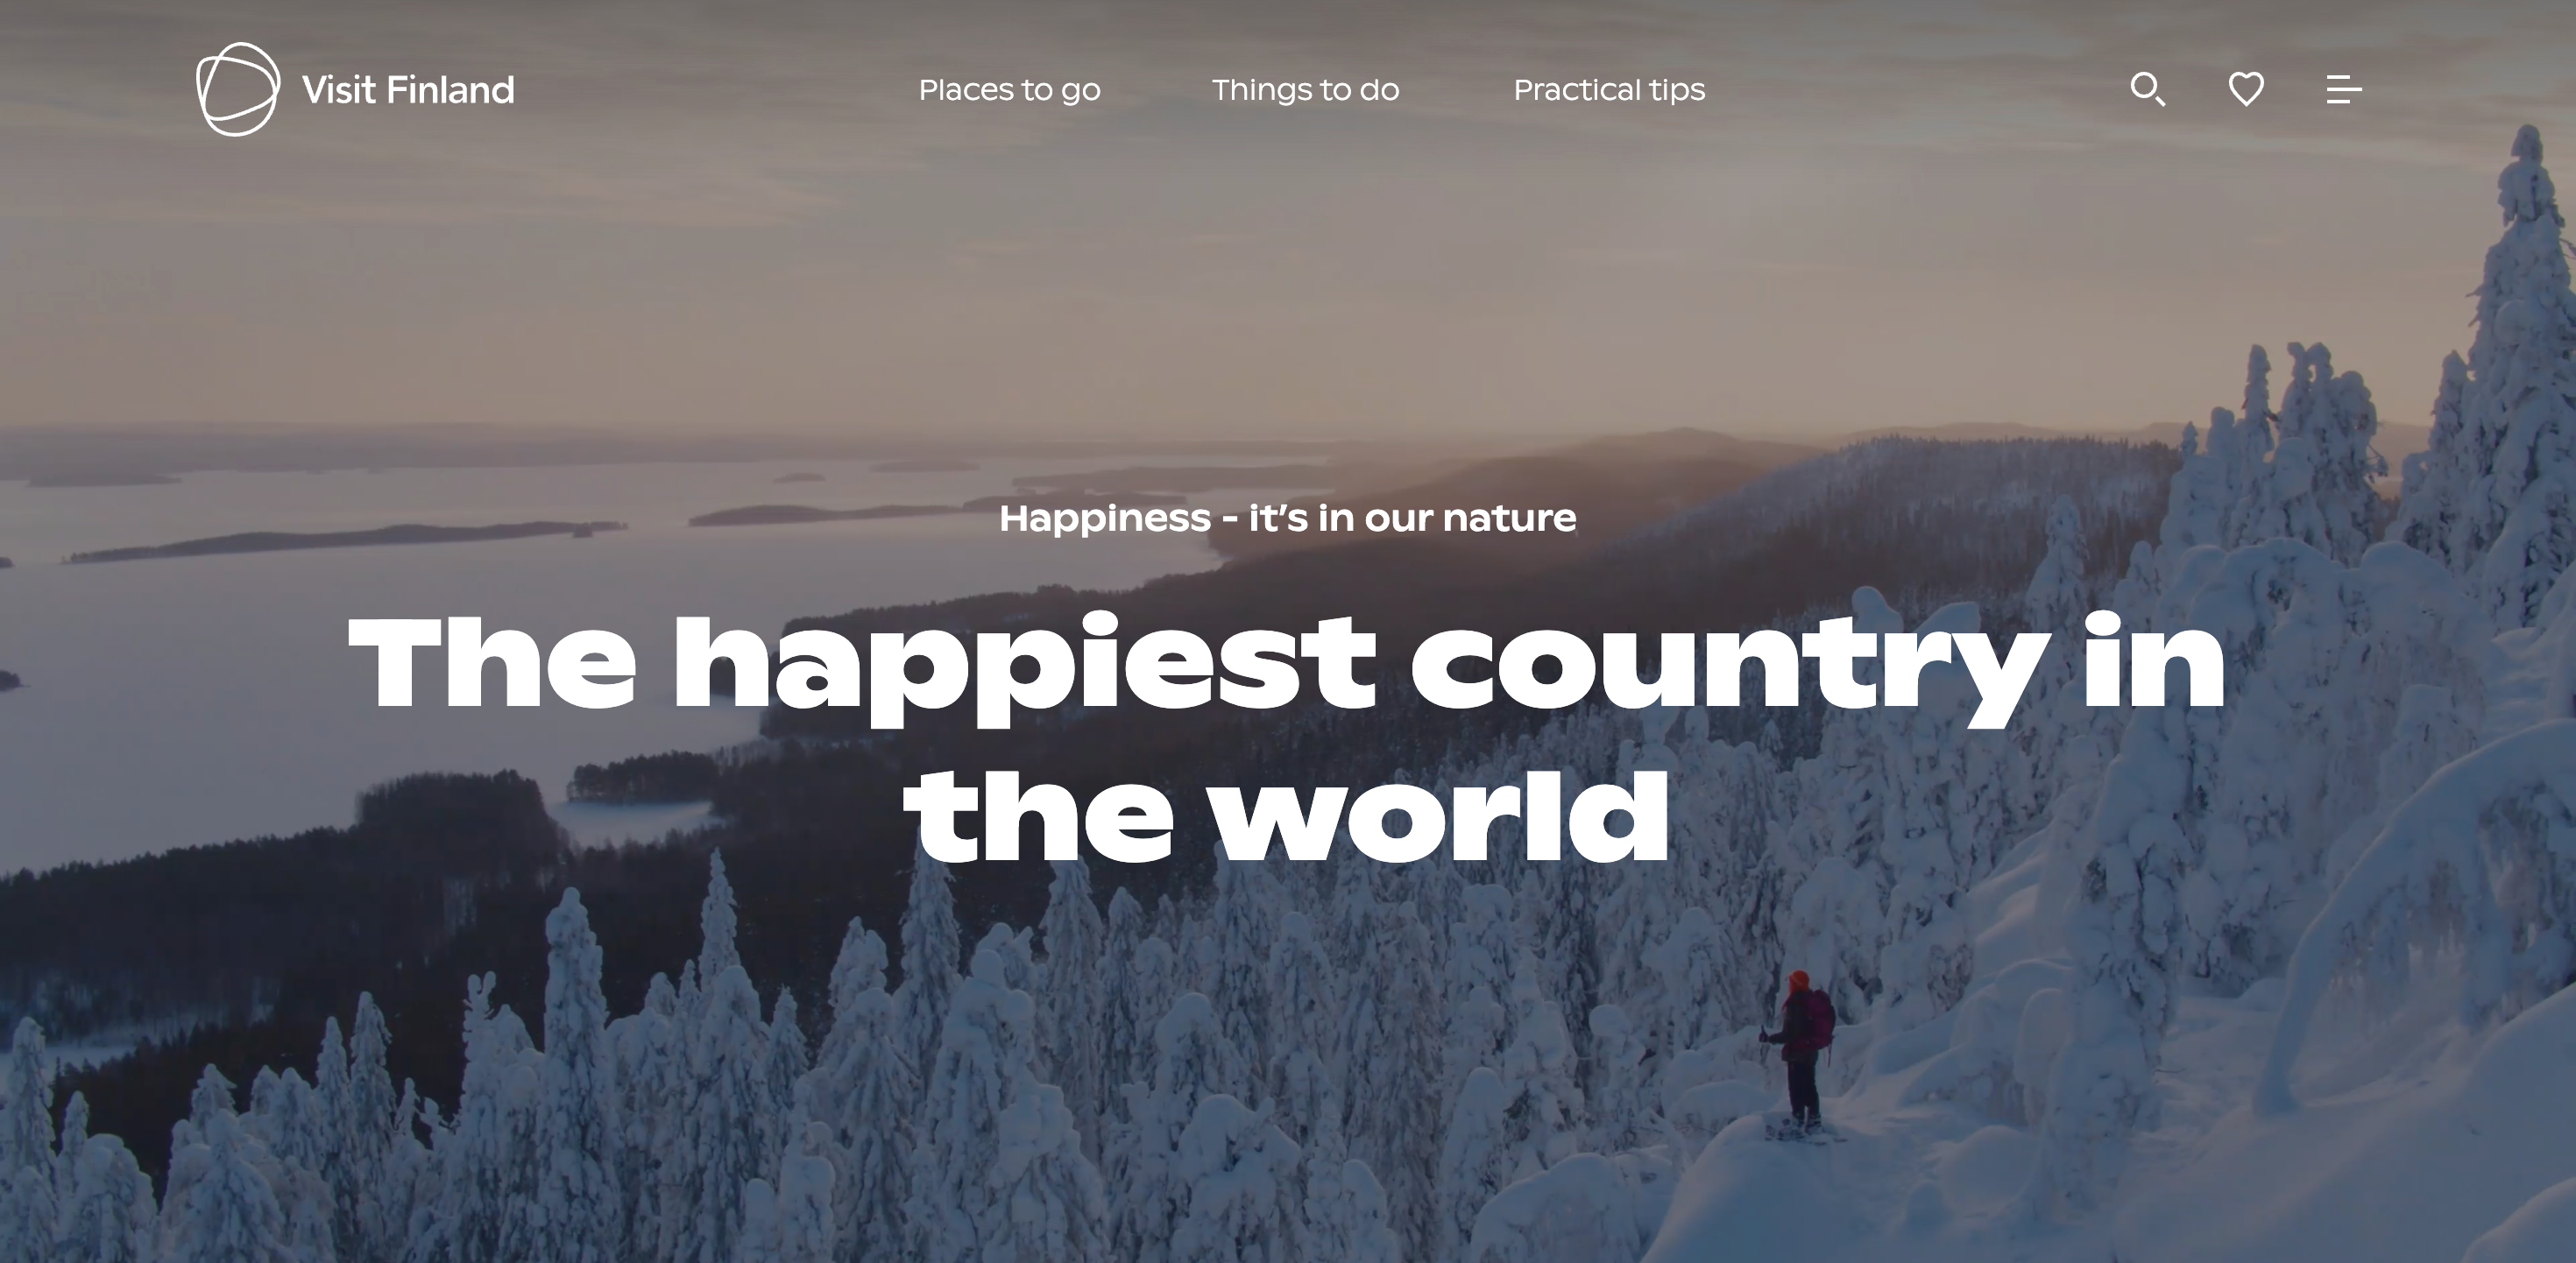 행복은 어떻게 관광자원이 되는가? 핀란드의 관광 마케팅